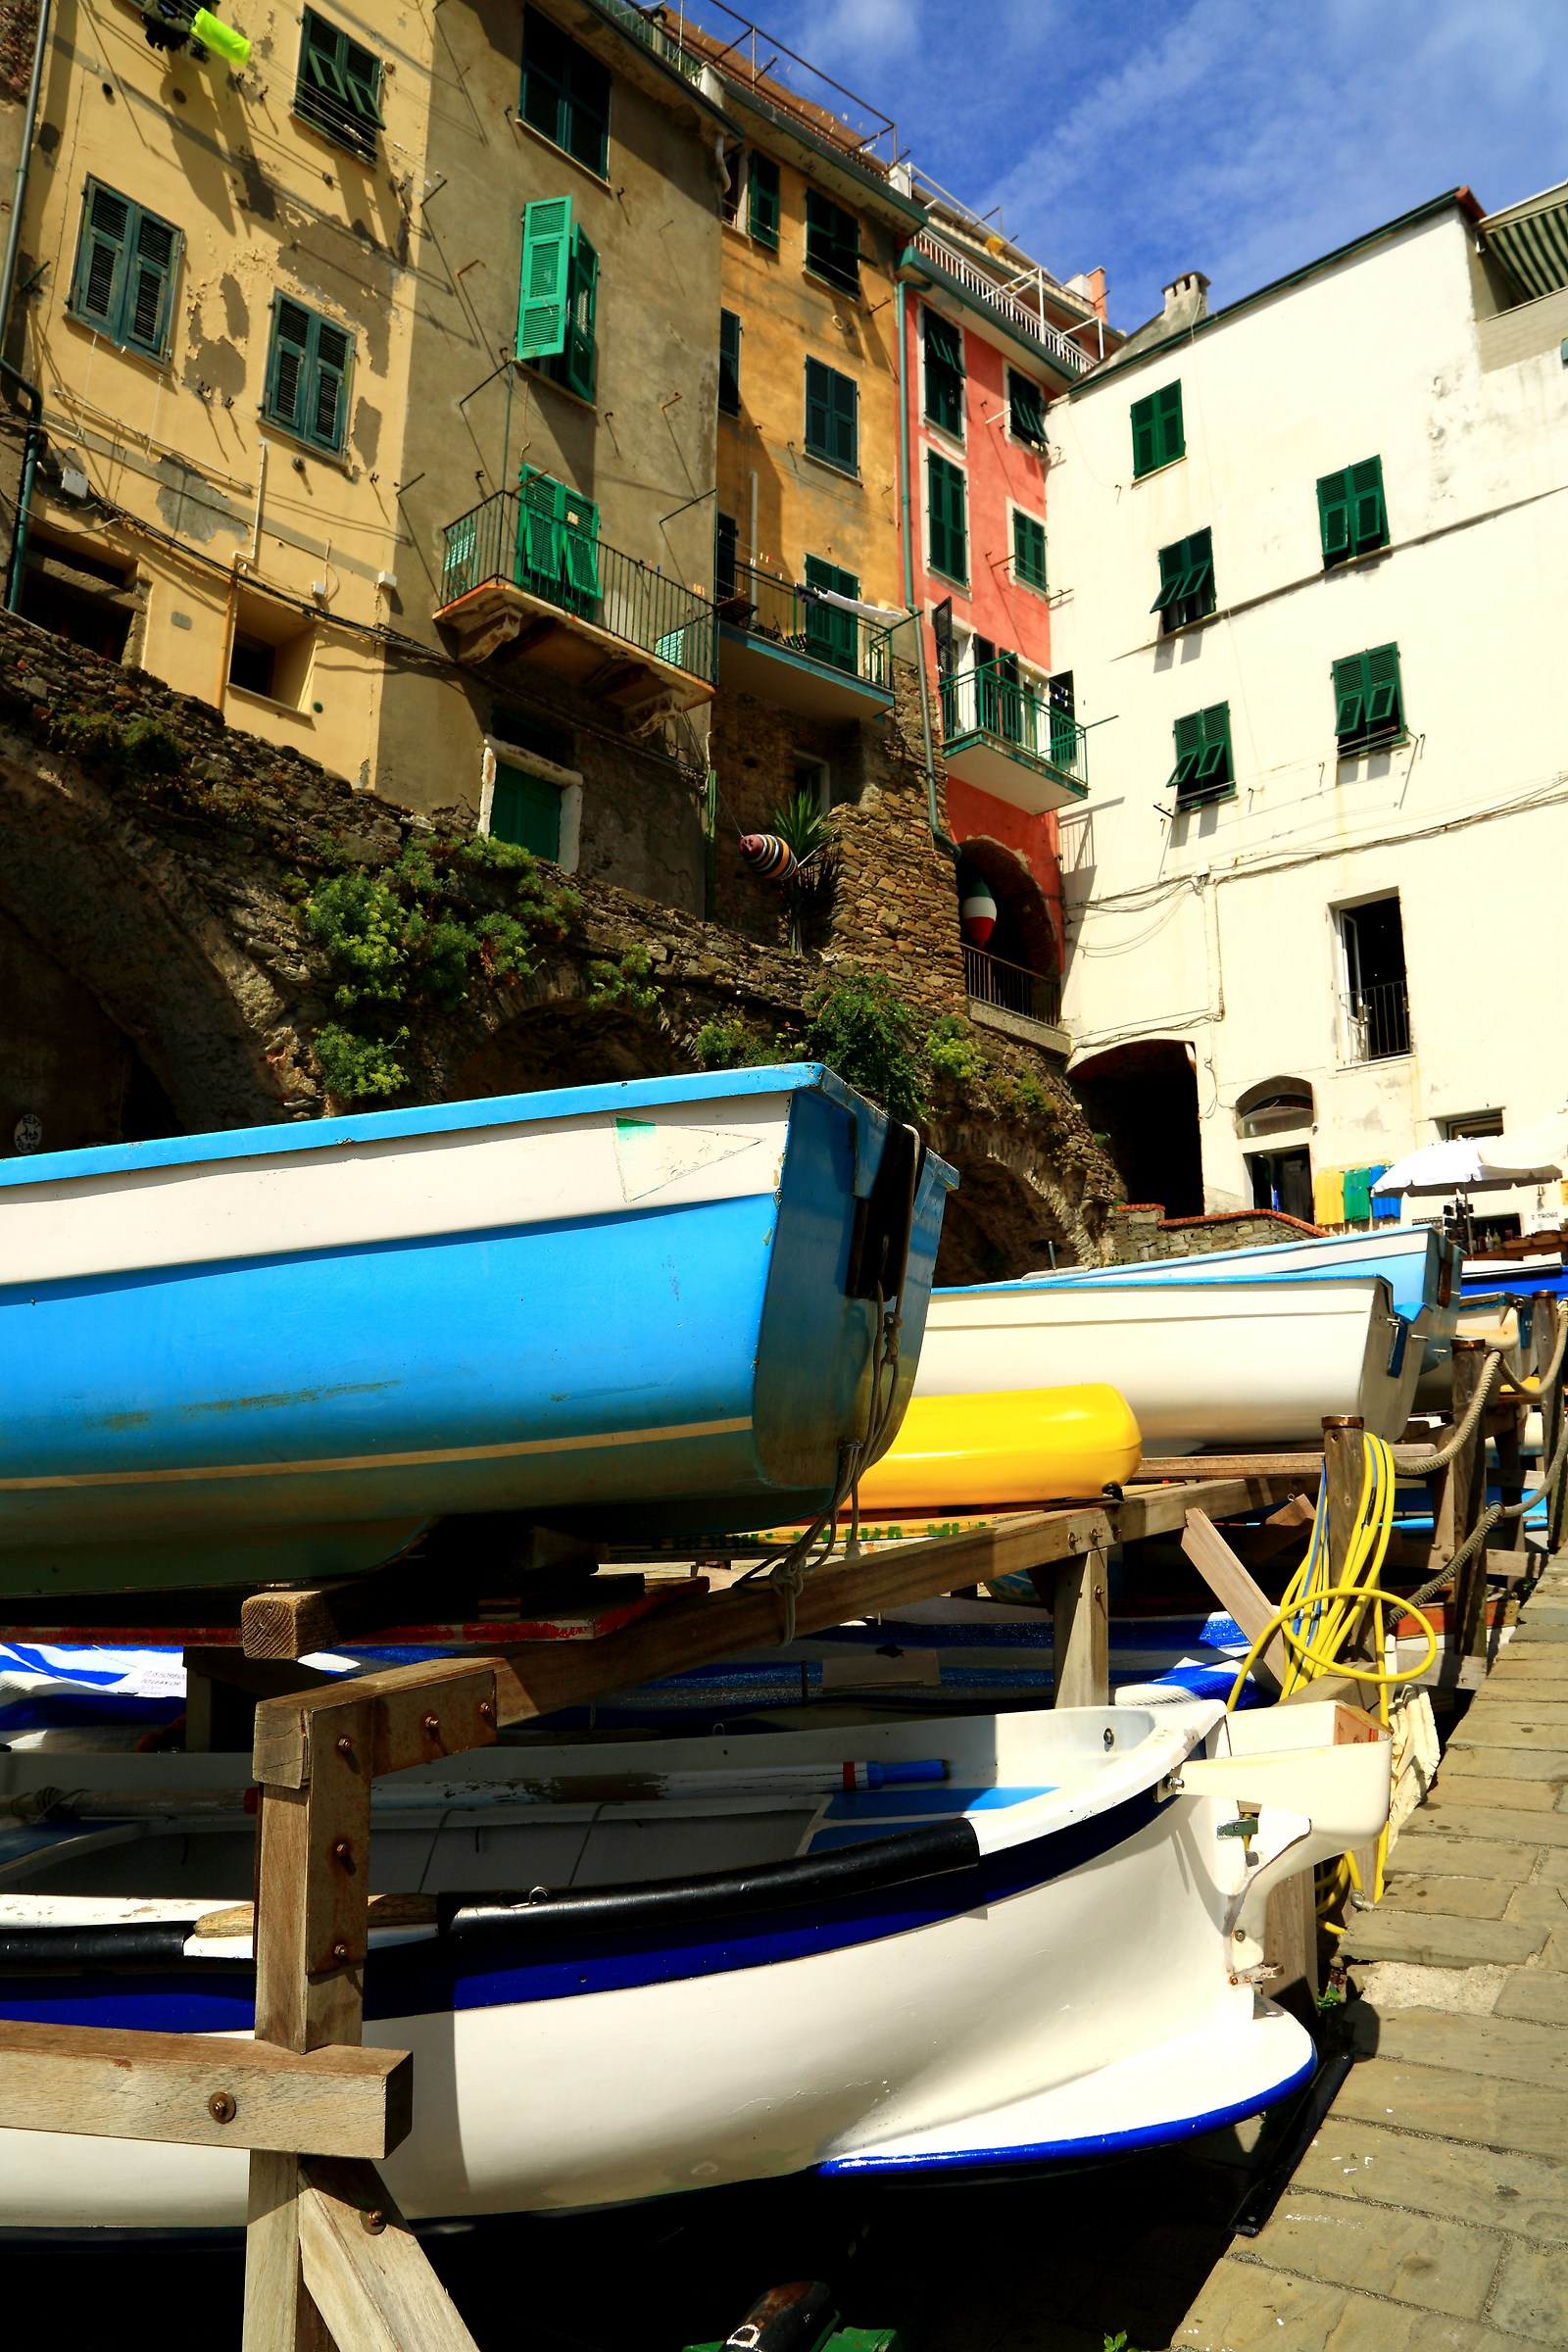 Boats in Riomaggiore...